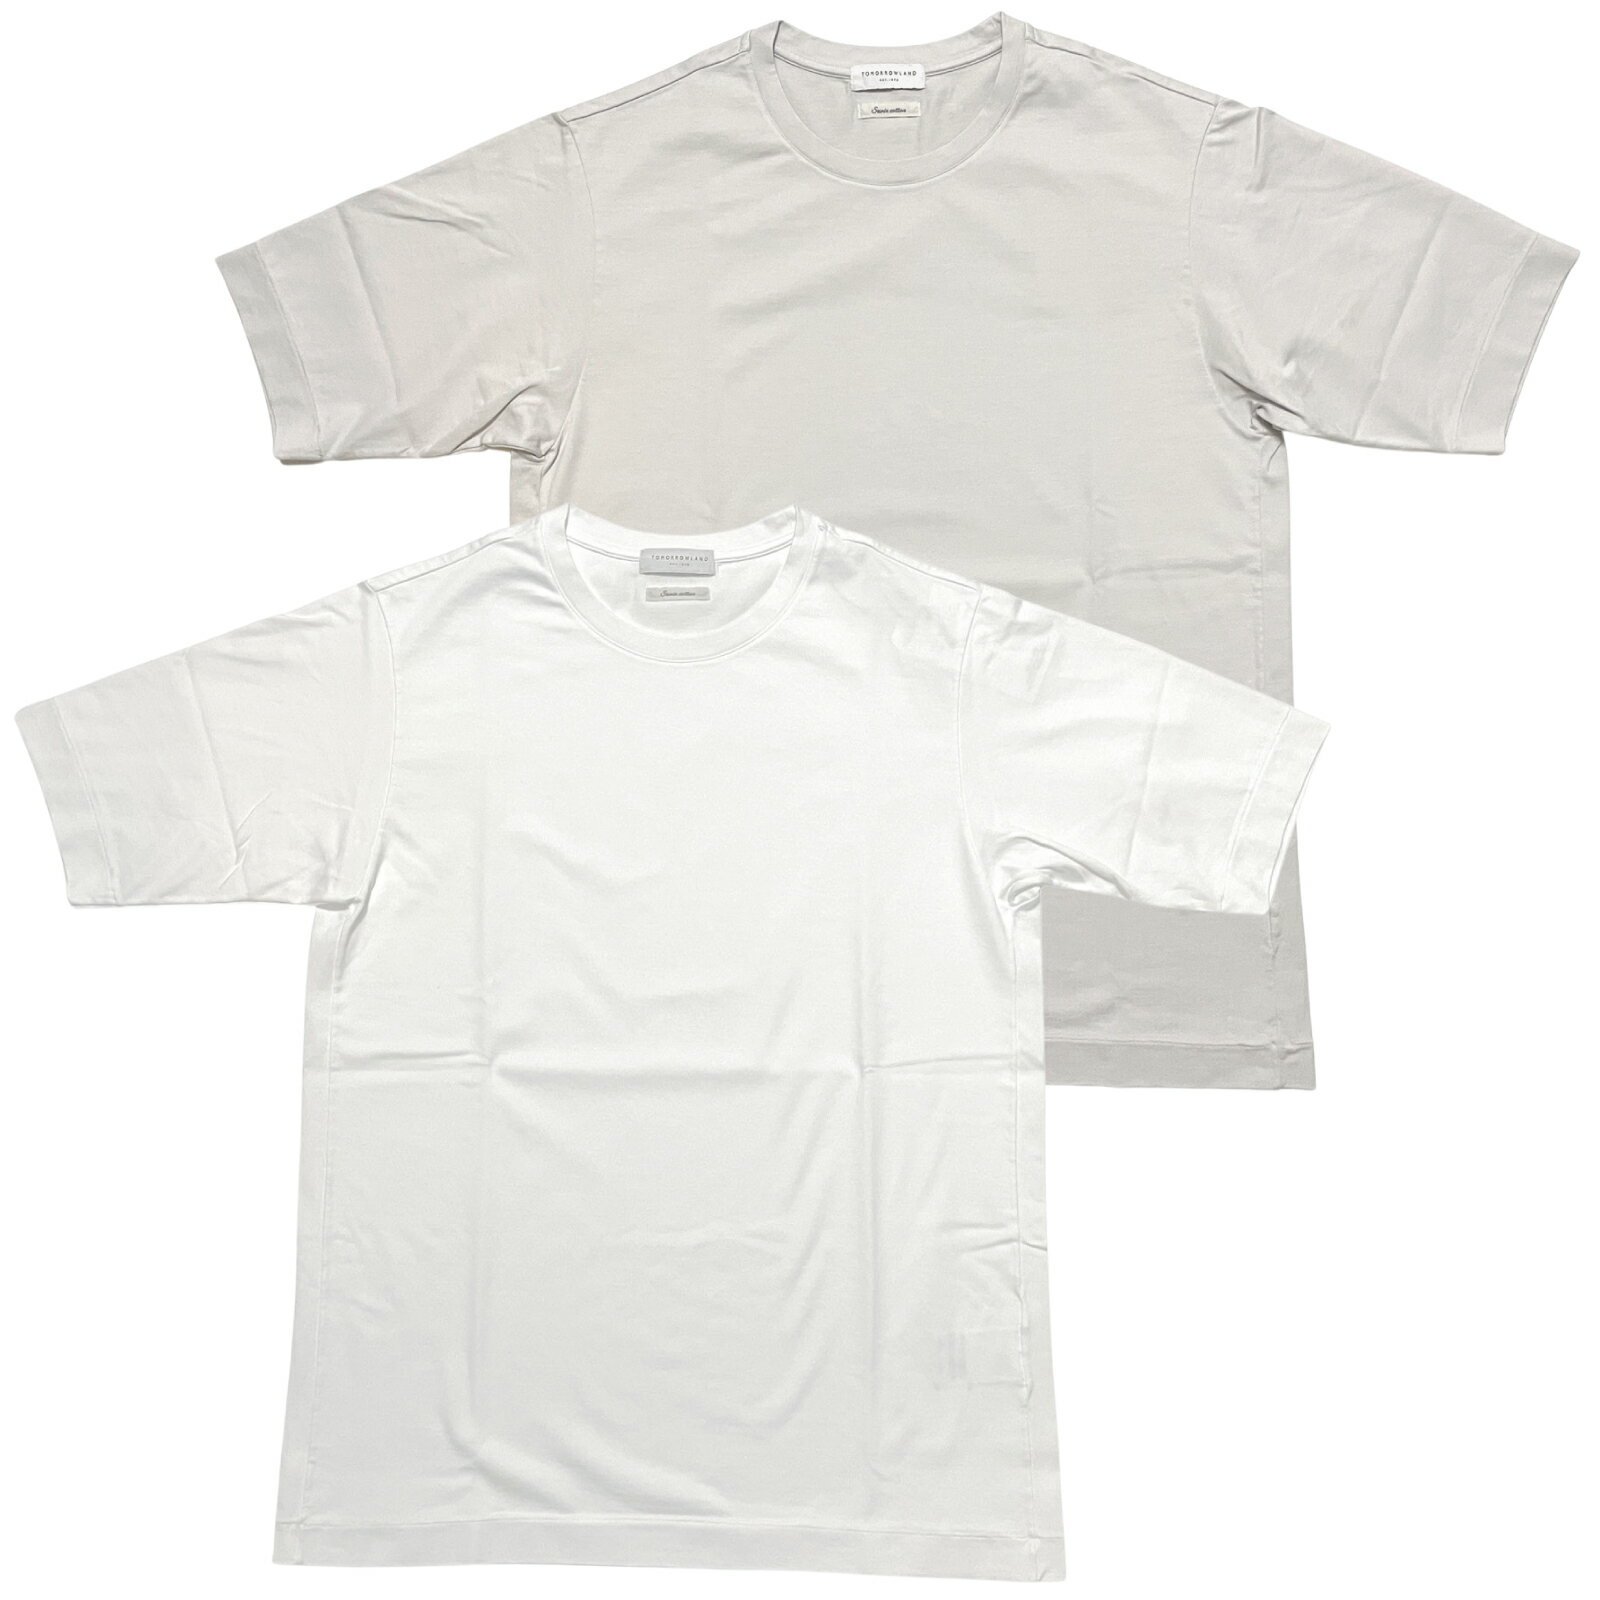 トゥモローランド TOMORROWLAND トゥモローランド メンズ Tシャツ / SUVIN COTTON スビンコットン クルーネックTシャツ ホワイト ライトグレー / 半袖 丸首 日本製 / 63-11-42-11101